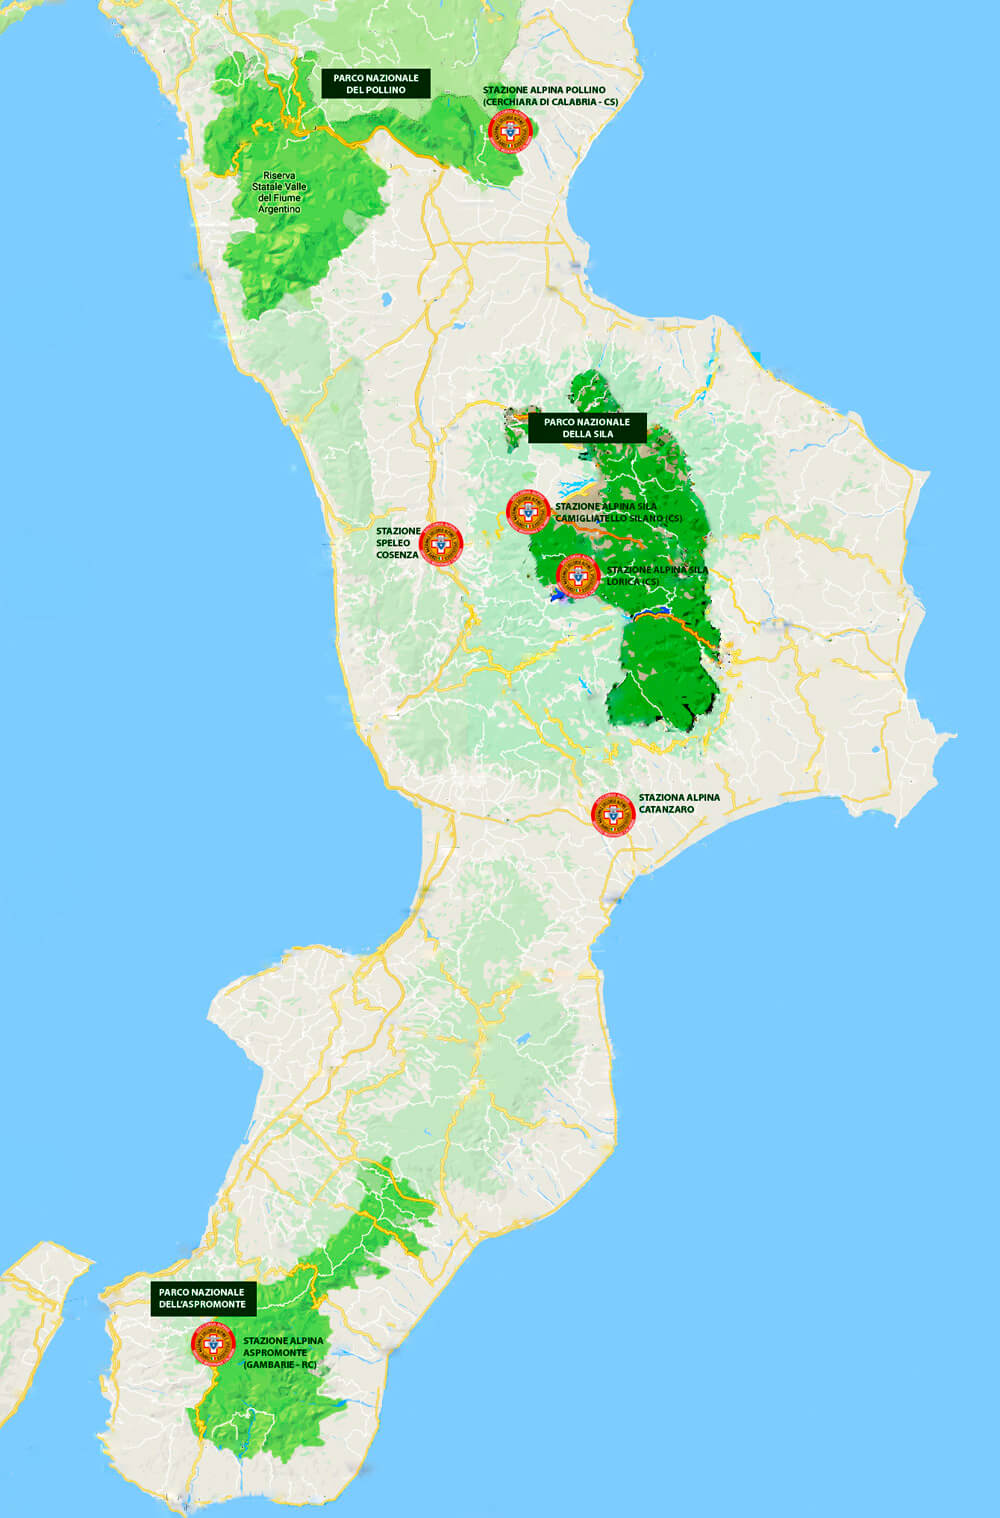 Posizionamento stazioni in Calabria